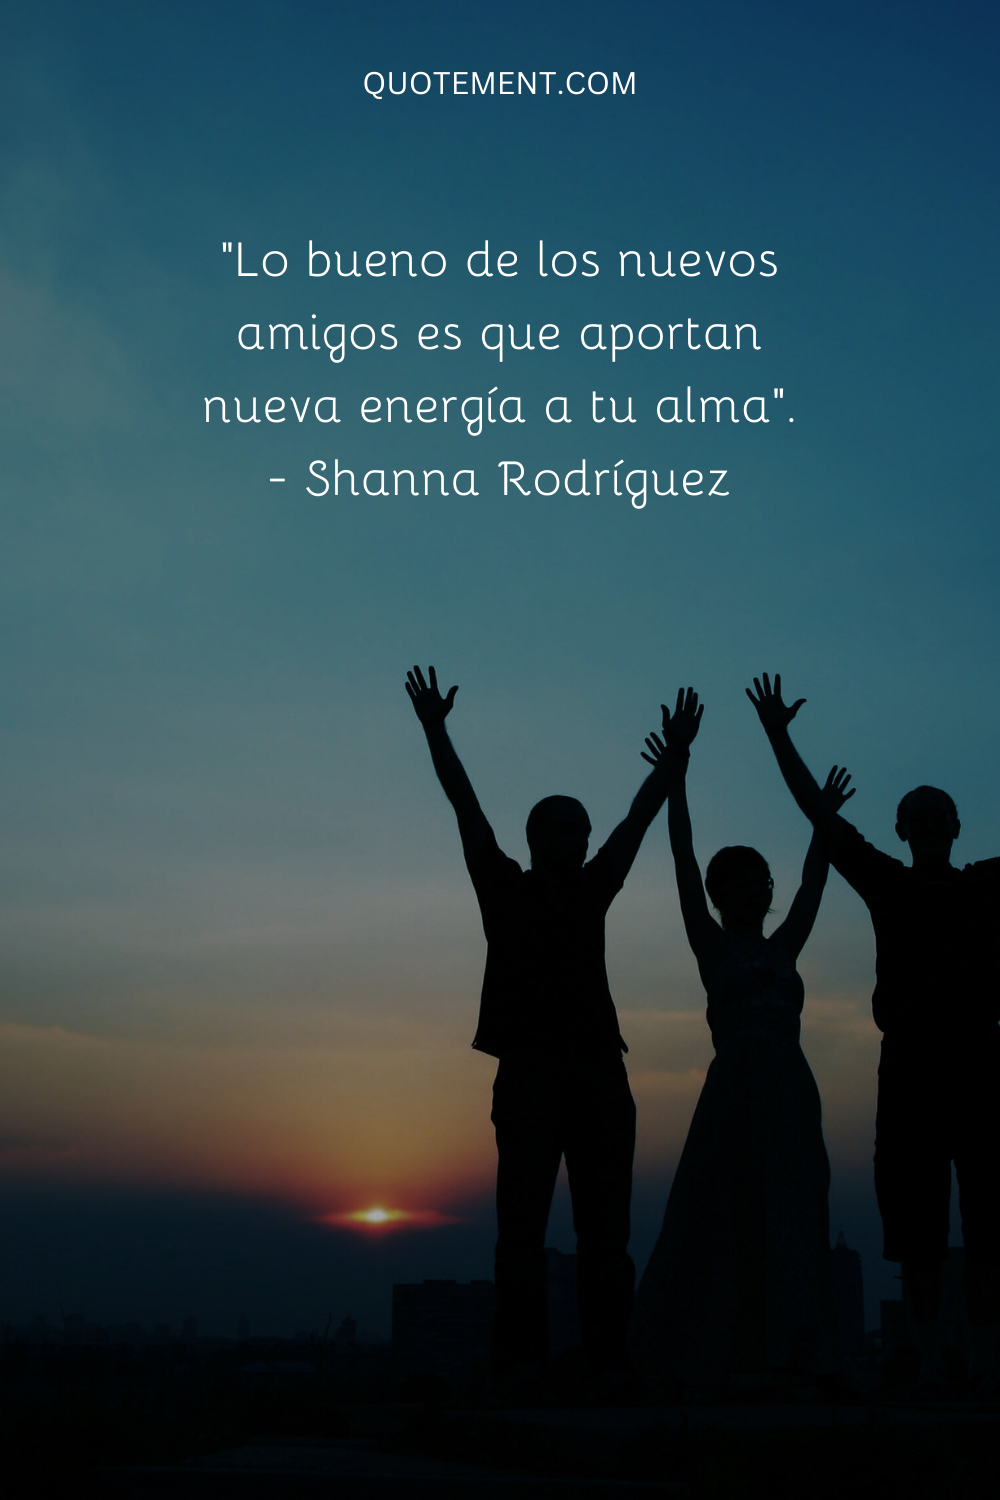 "Lo bueno de los nuevos amigos es que aportan nueva energía a tu alma". - Shanna Rodriguez